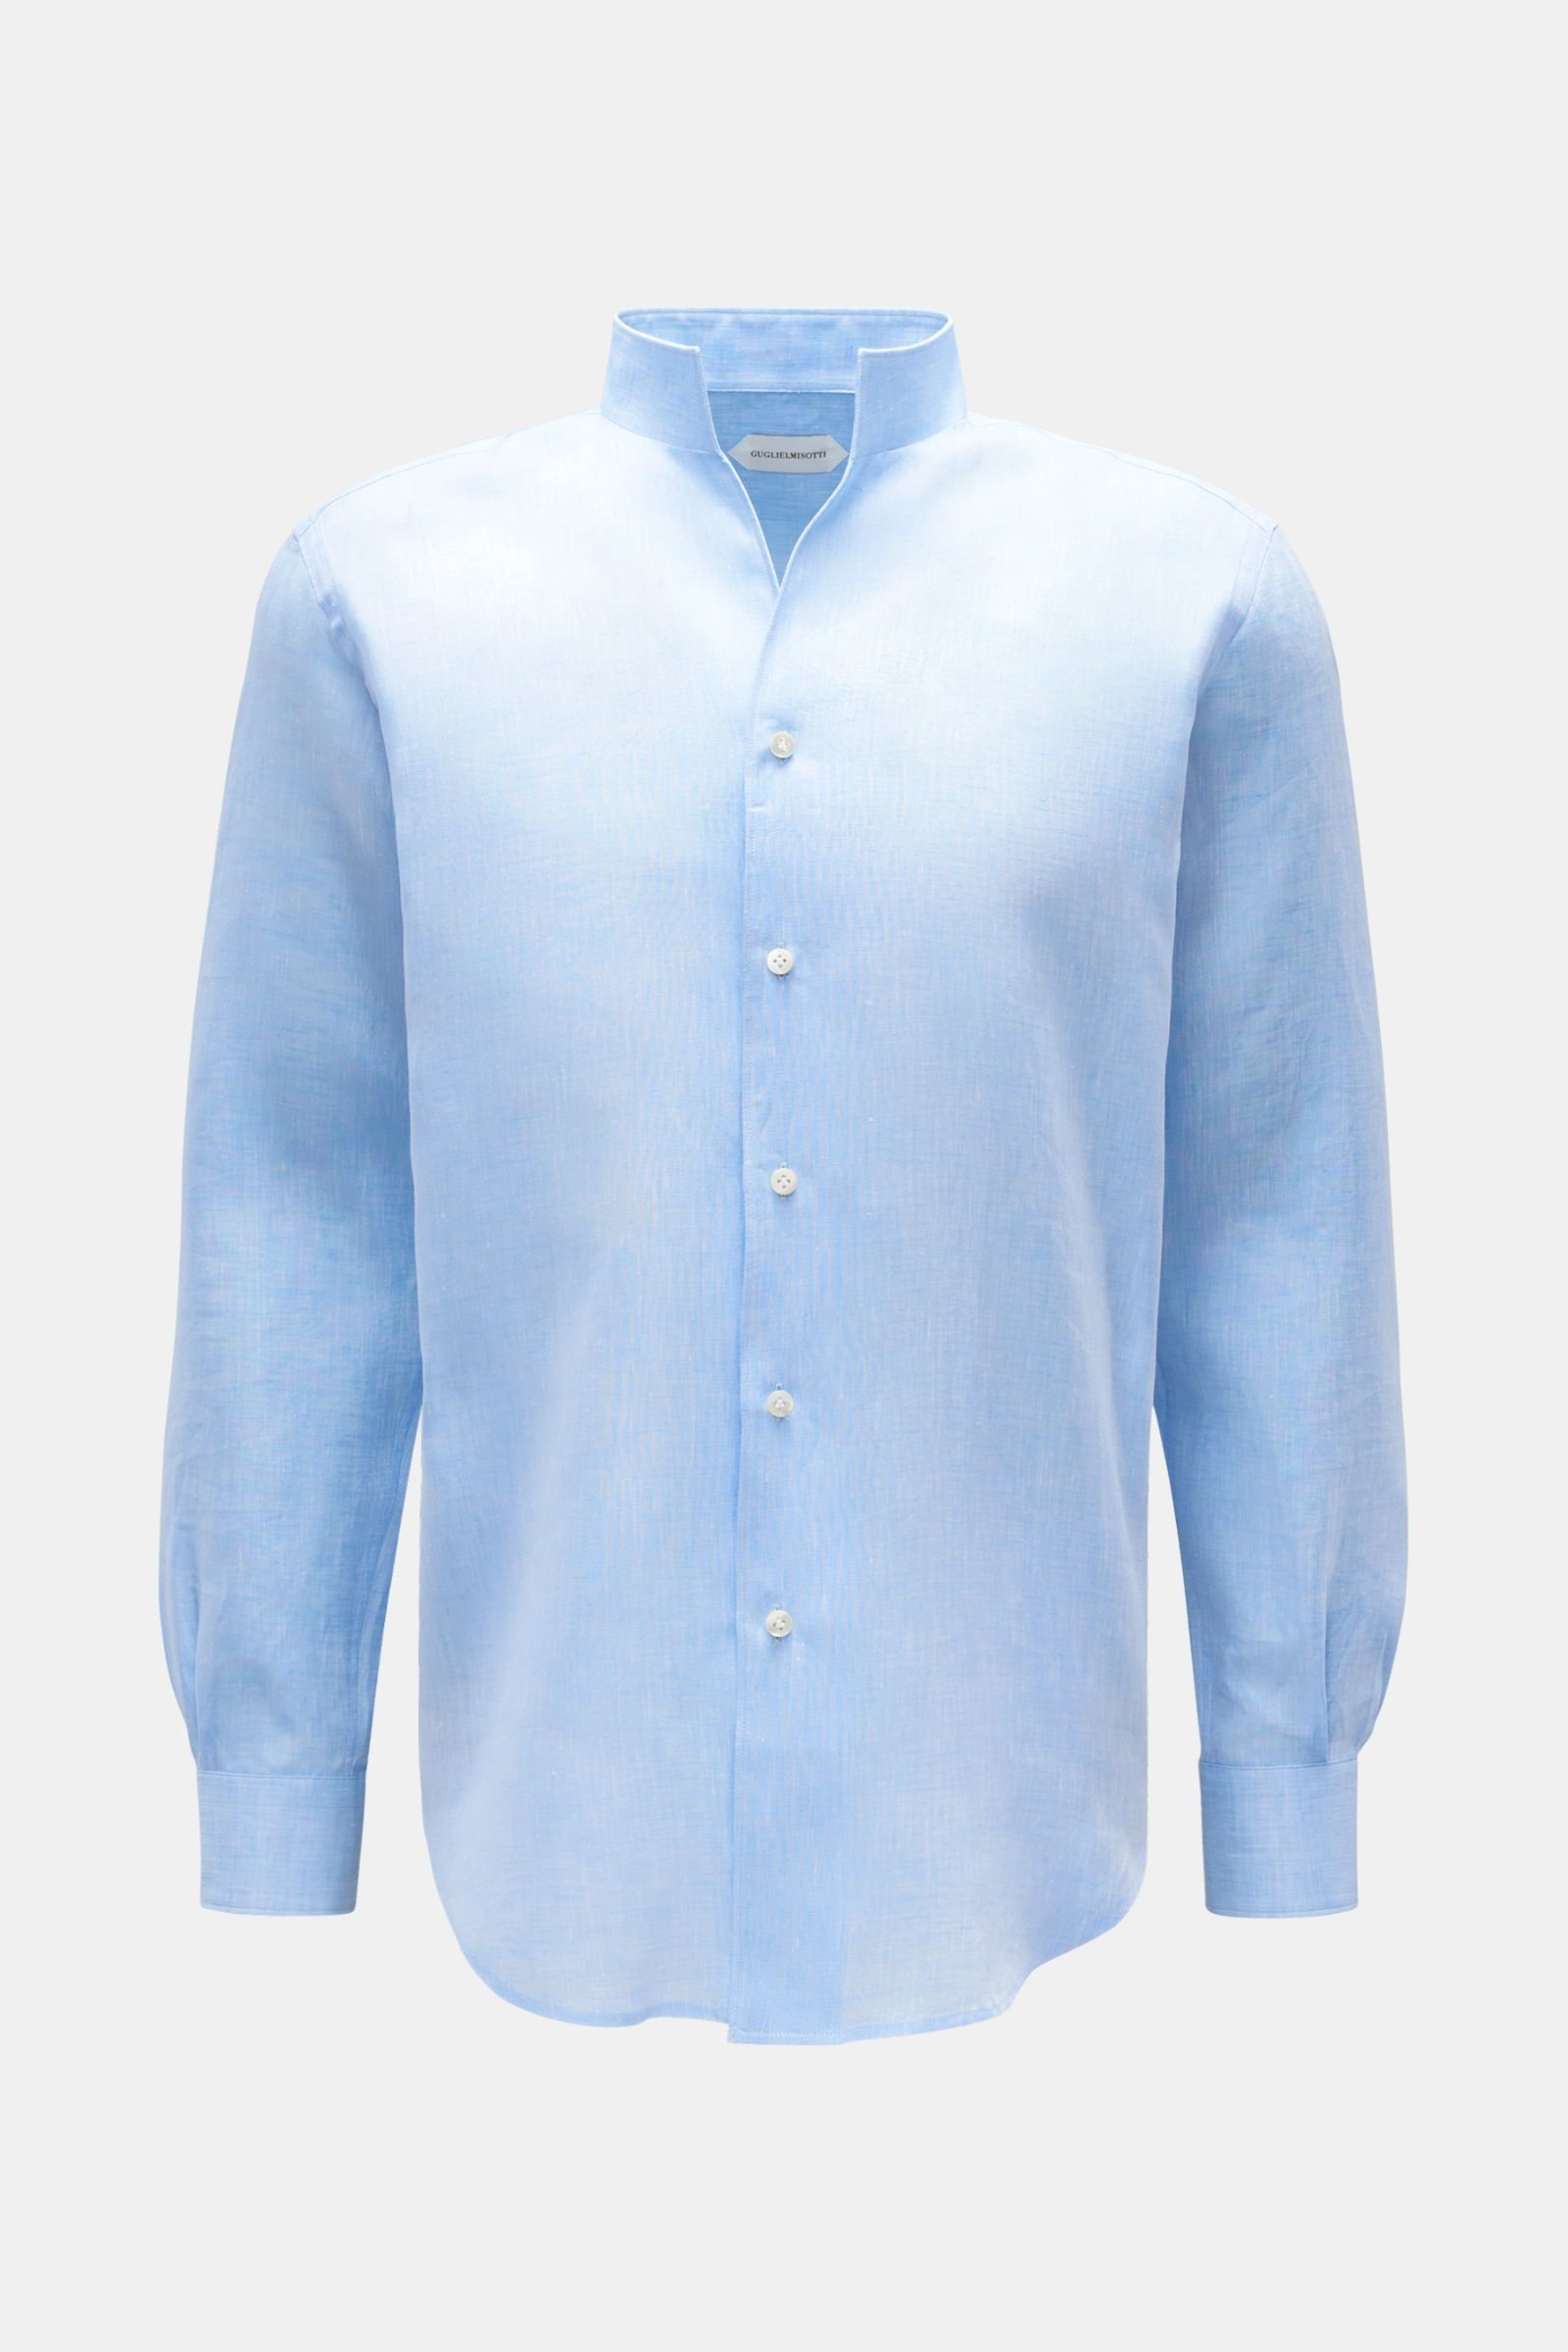 Linen shirt standing collar light blue